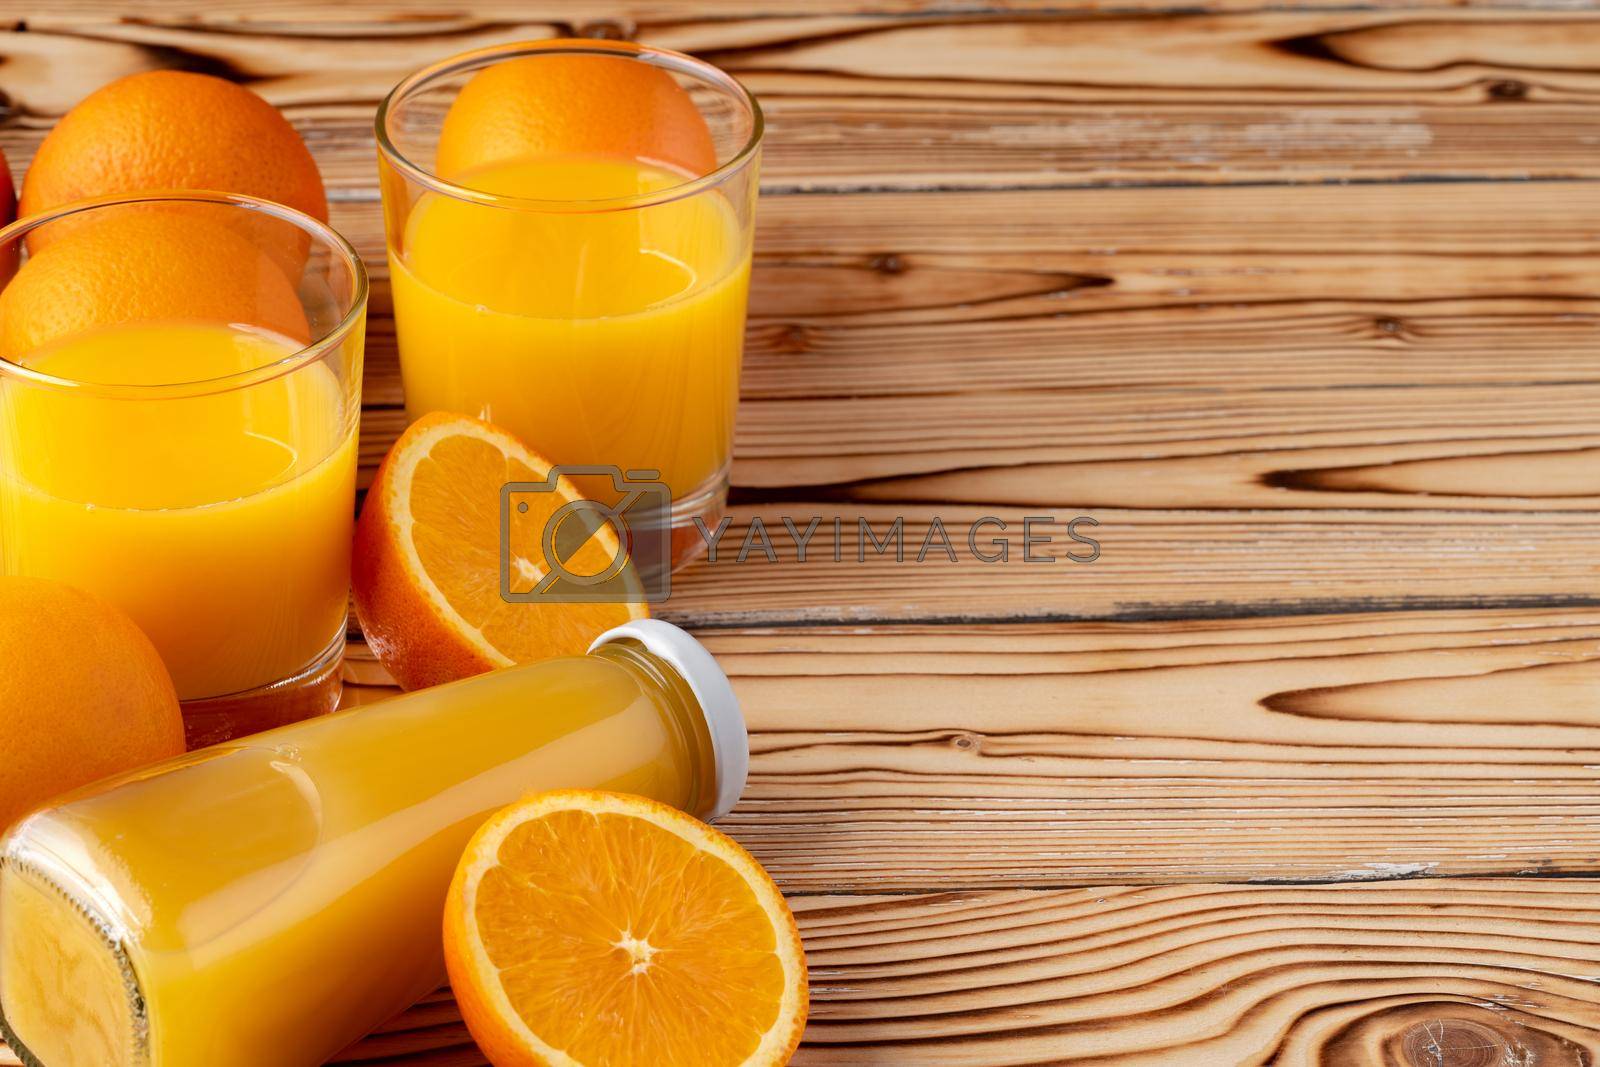 Royalty free image of Orange fruit and orange juice on wooden background by Fabrikasimf